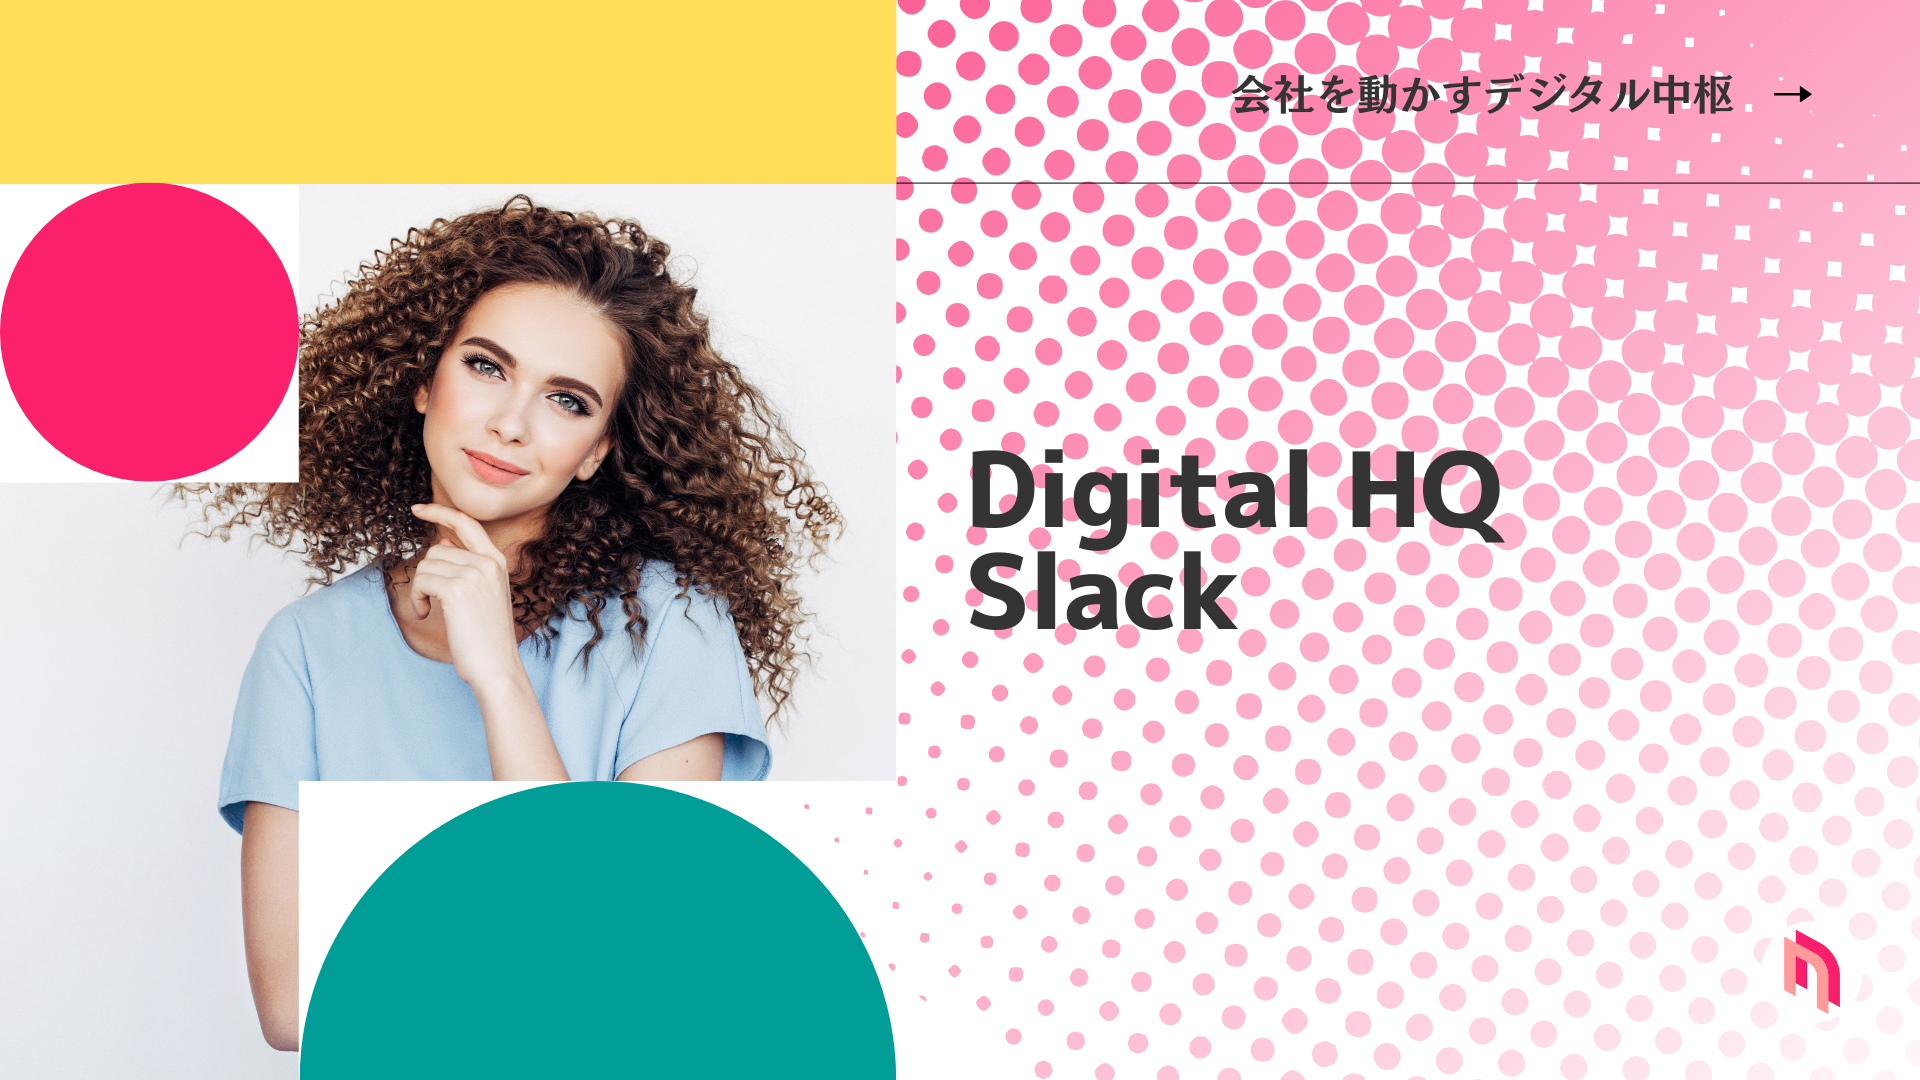 Digital HQ（会社を動かすデジタル中枢）としてのSlackを活用したDX